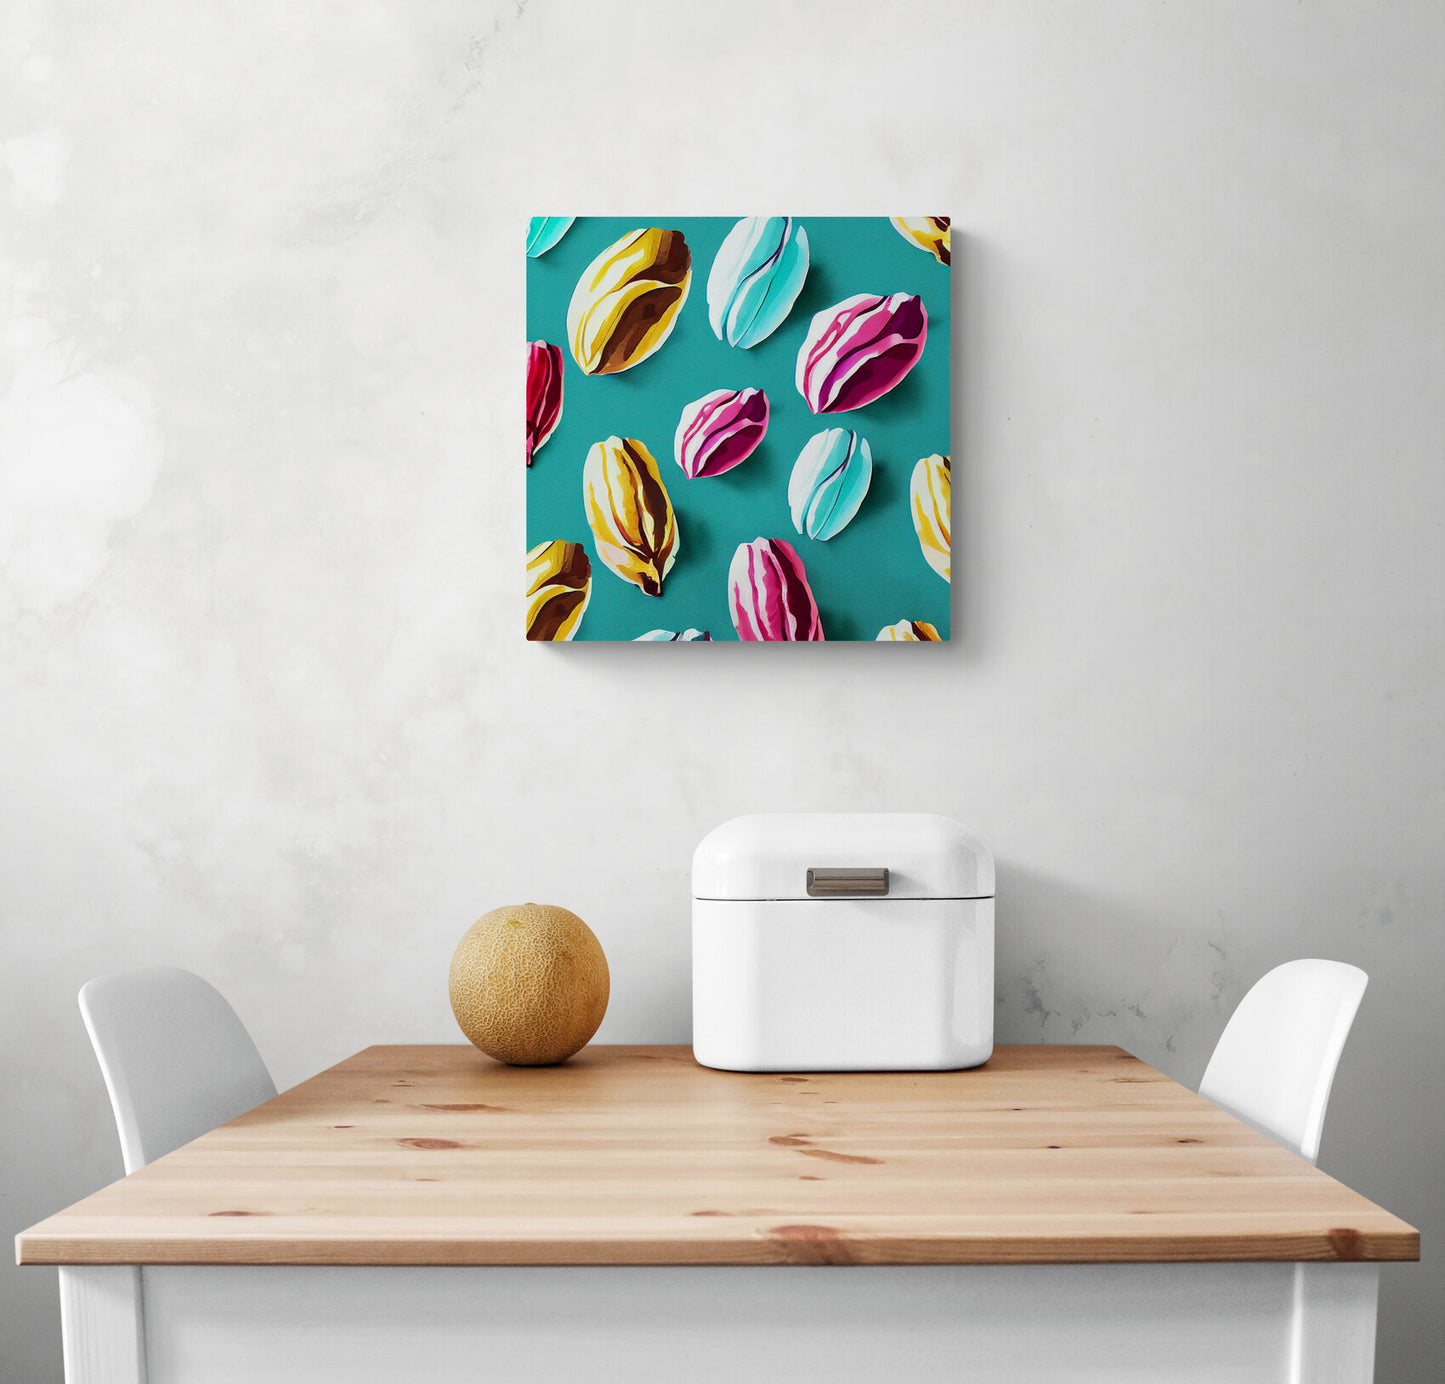 Canvas de plusieurs cacaos colorés, dans les tons bleu ciel, rose et jaune. Style Nathalie Lété. Habiller de papier conqueror, le fond est ajoute une touche de sophistication à cette œuvre.